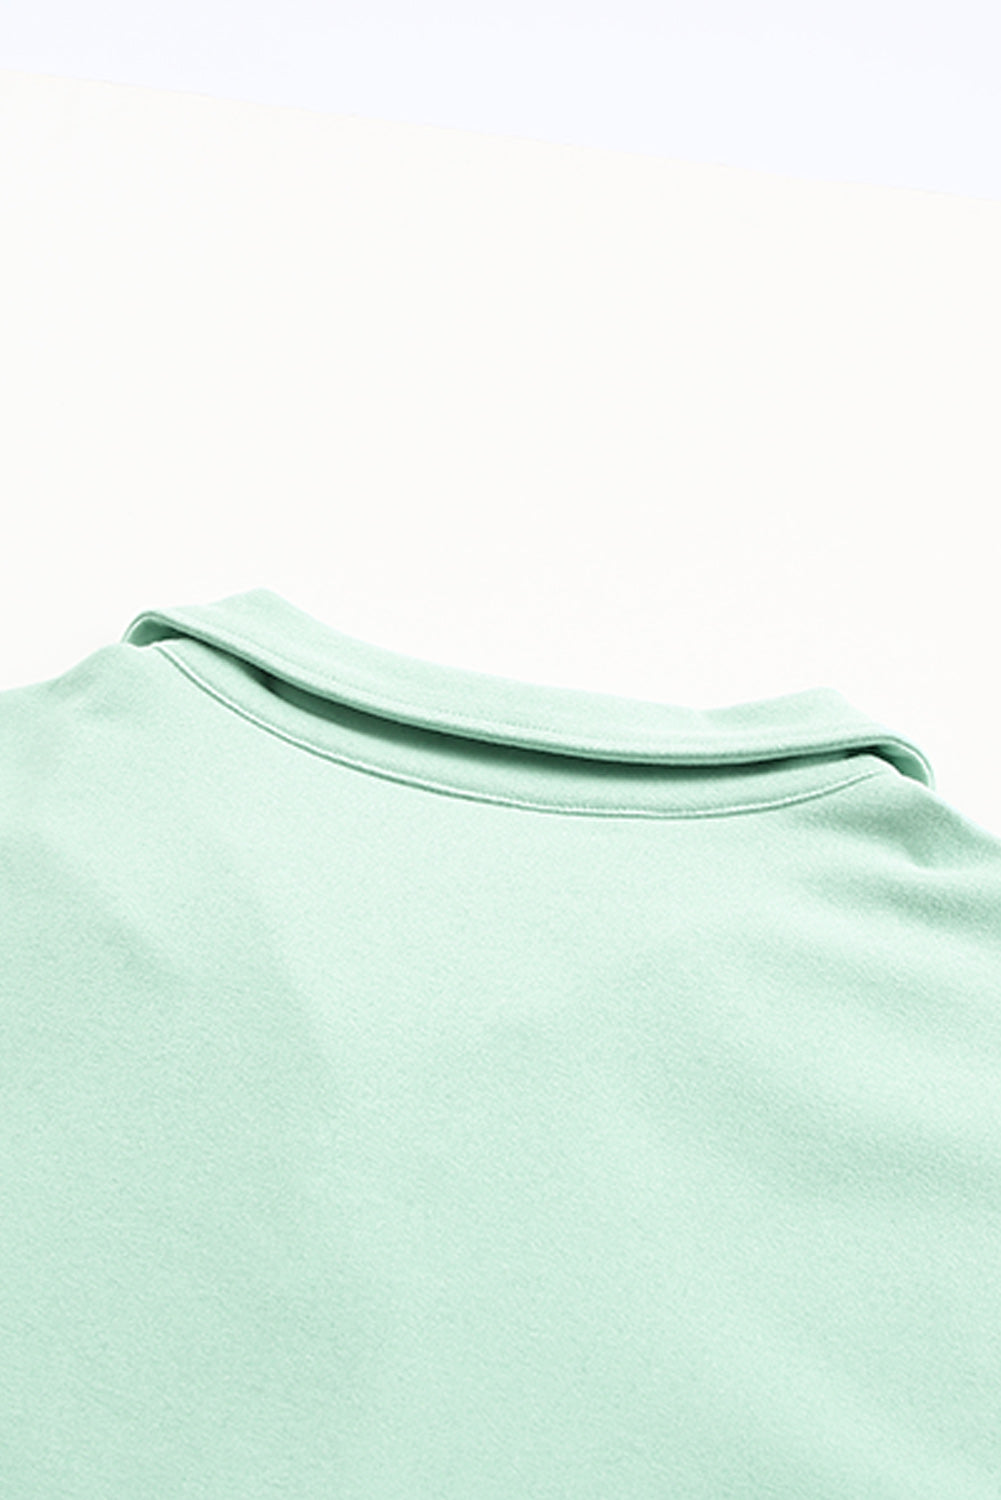 Sweat-shirt vert avec fermeture éclair et poches sur le devant